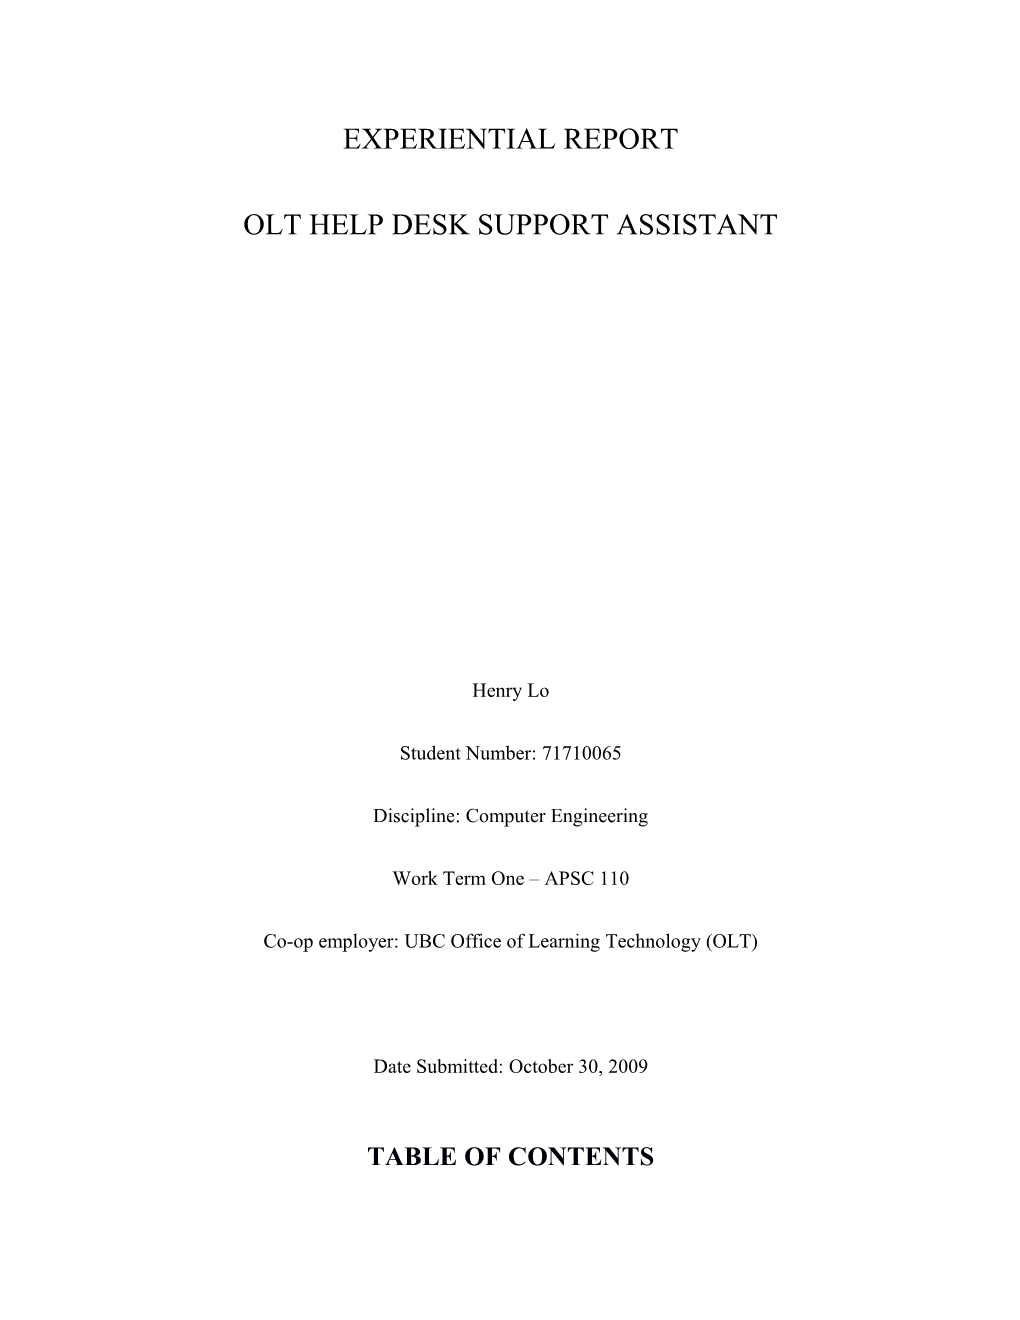 Olt Help Desk Support Assistant